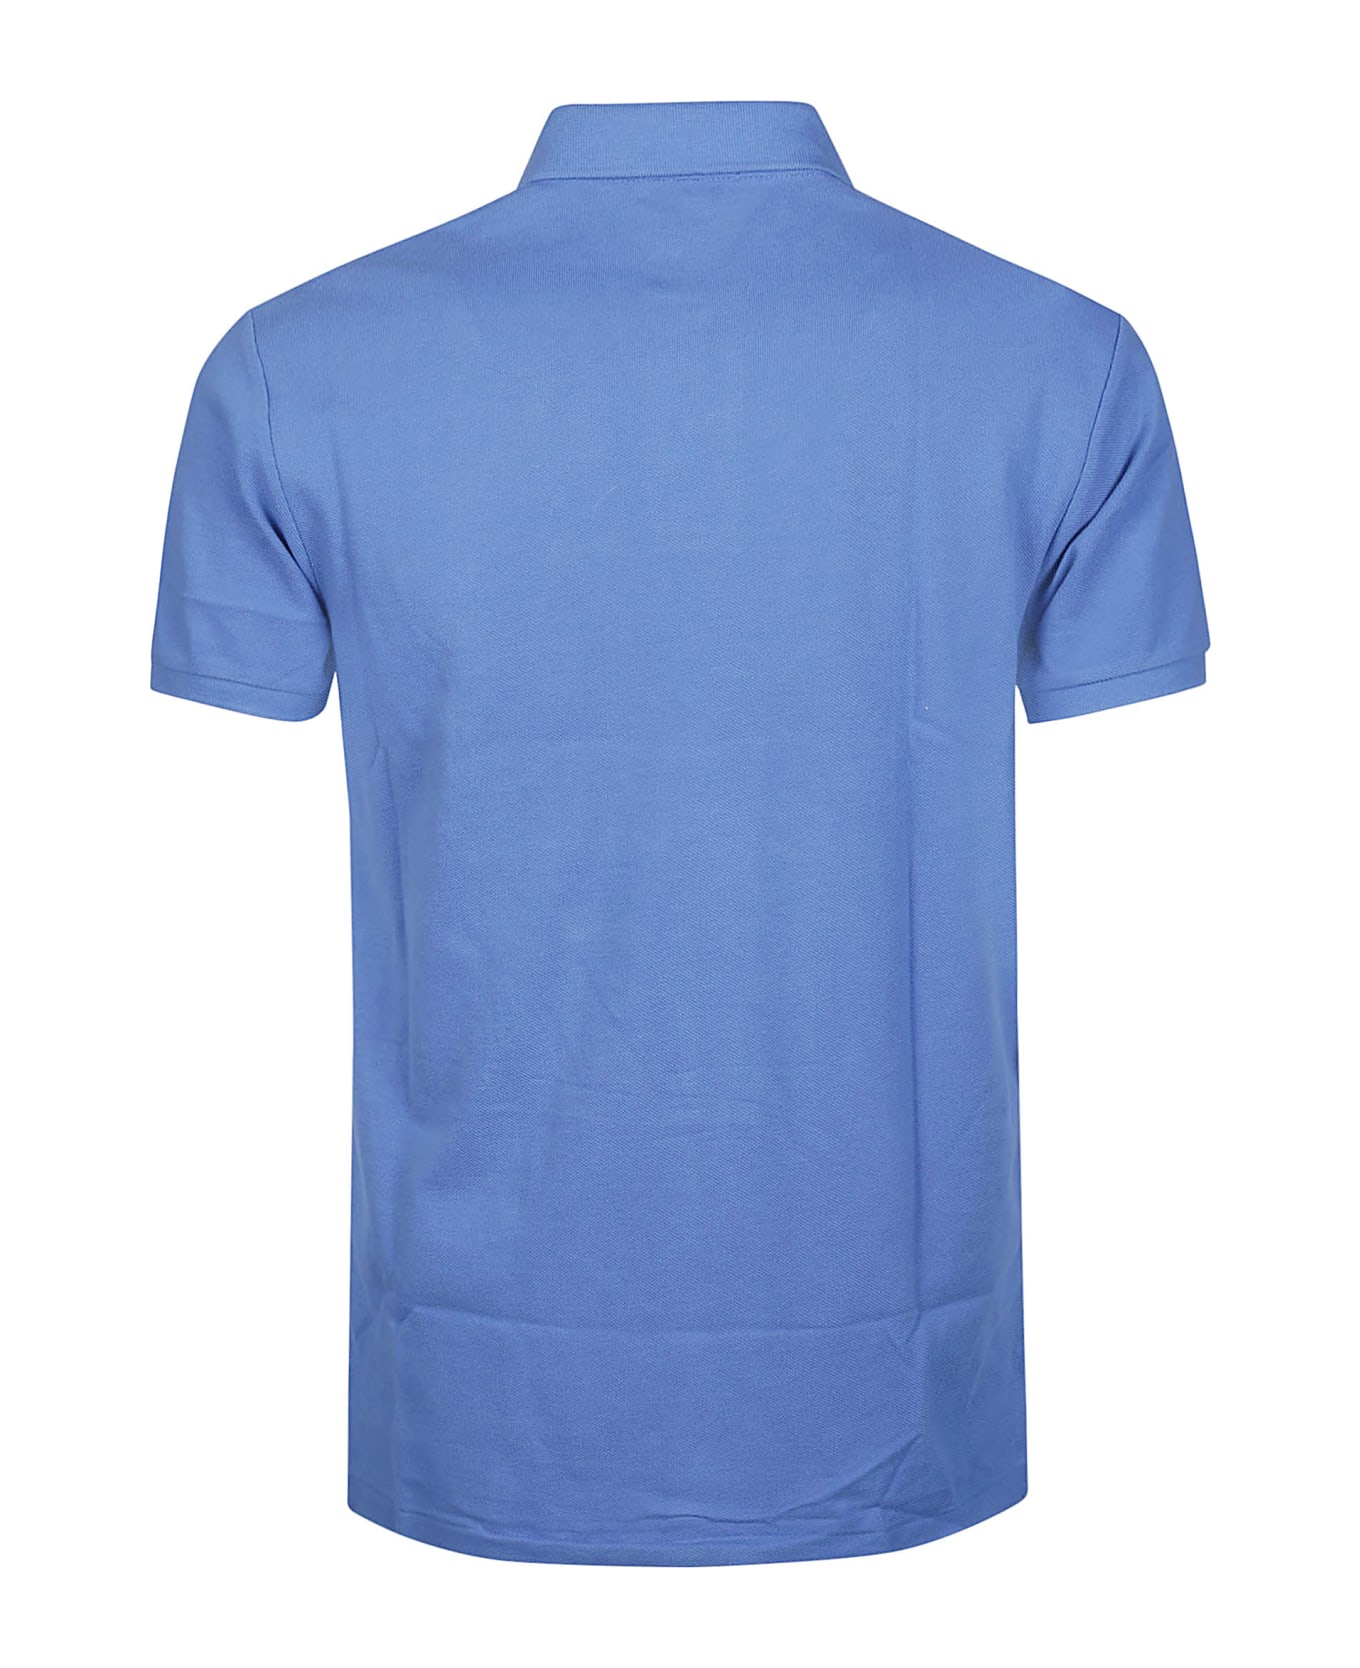 Polo Ralph Lauren Short Sleeve Polo Shirt Polo Ralph Lauren - BLUE ポロシャツ